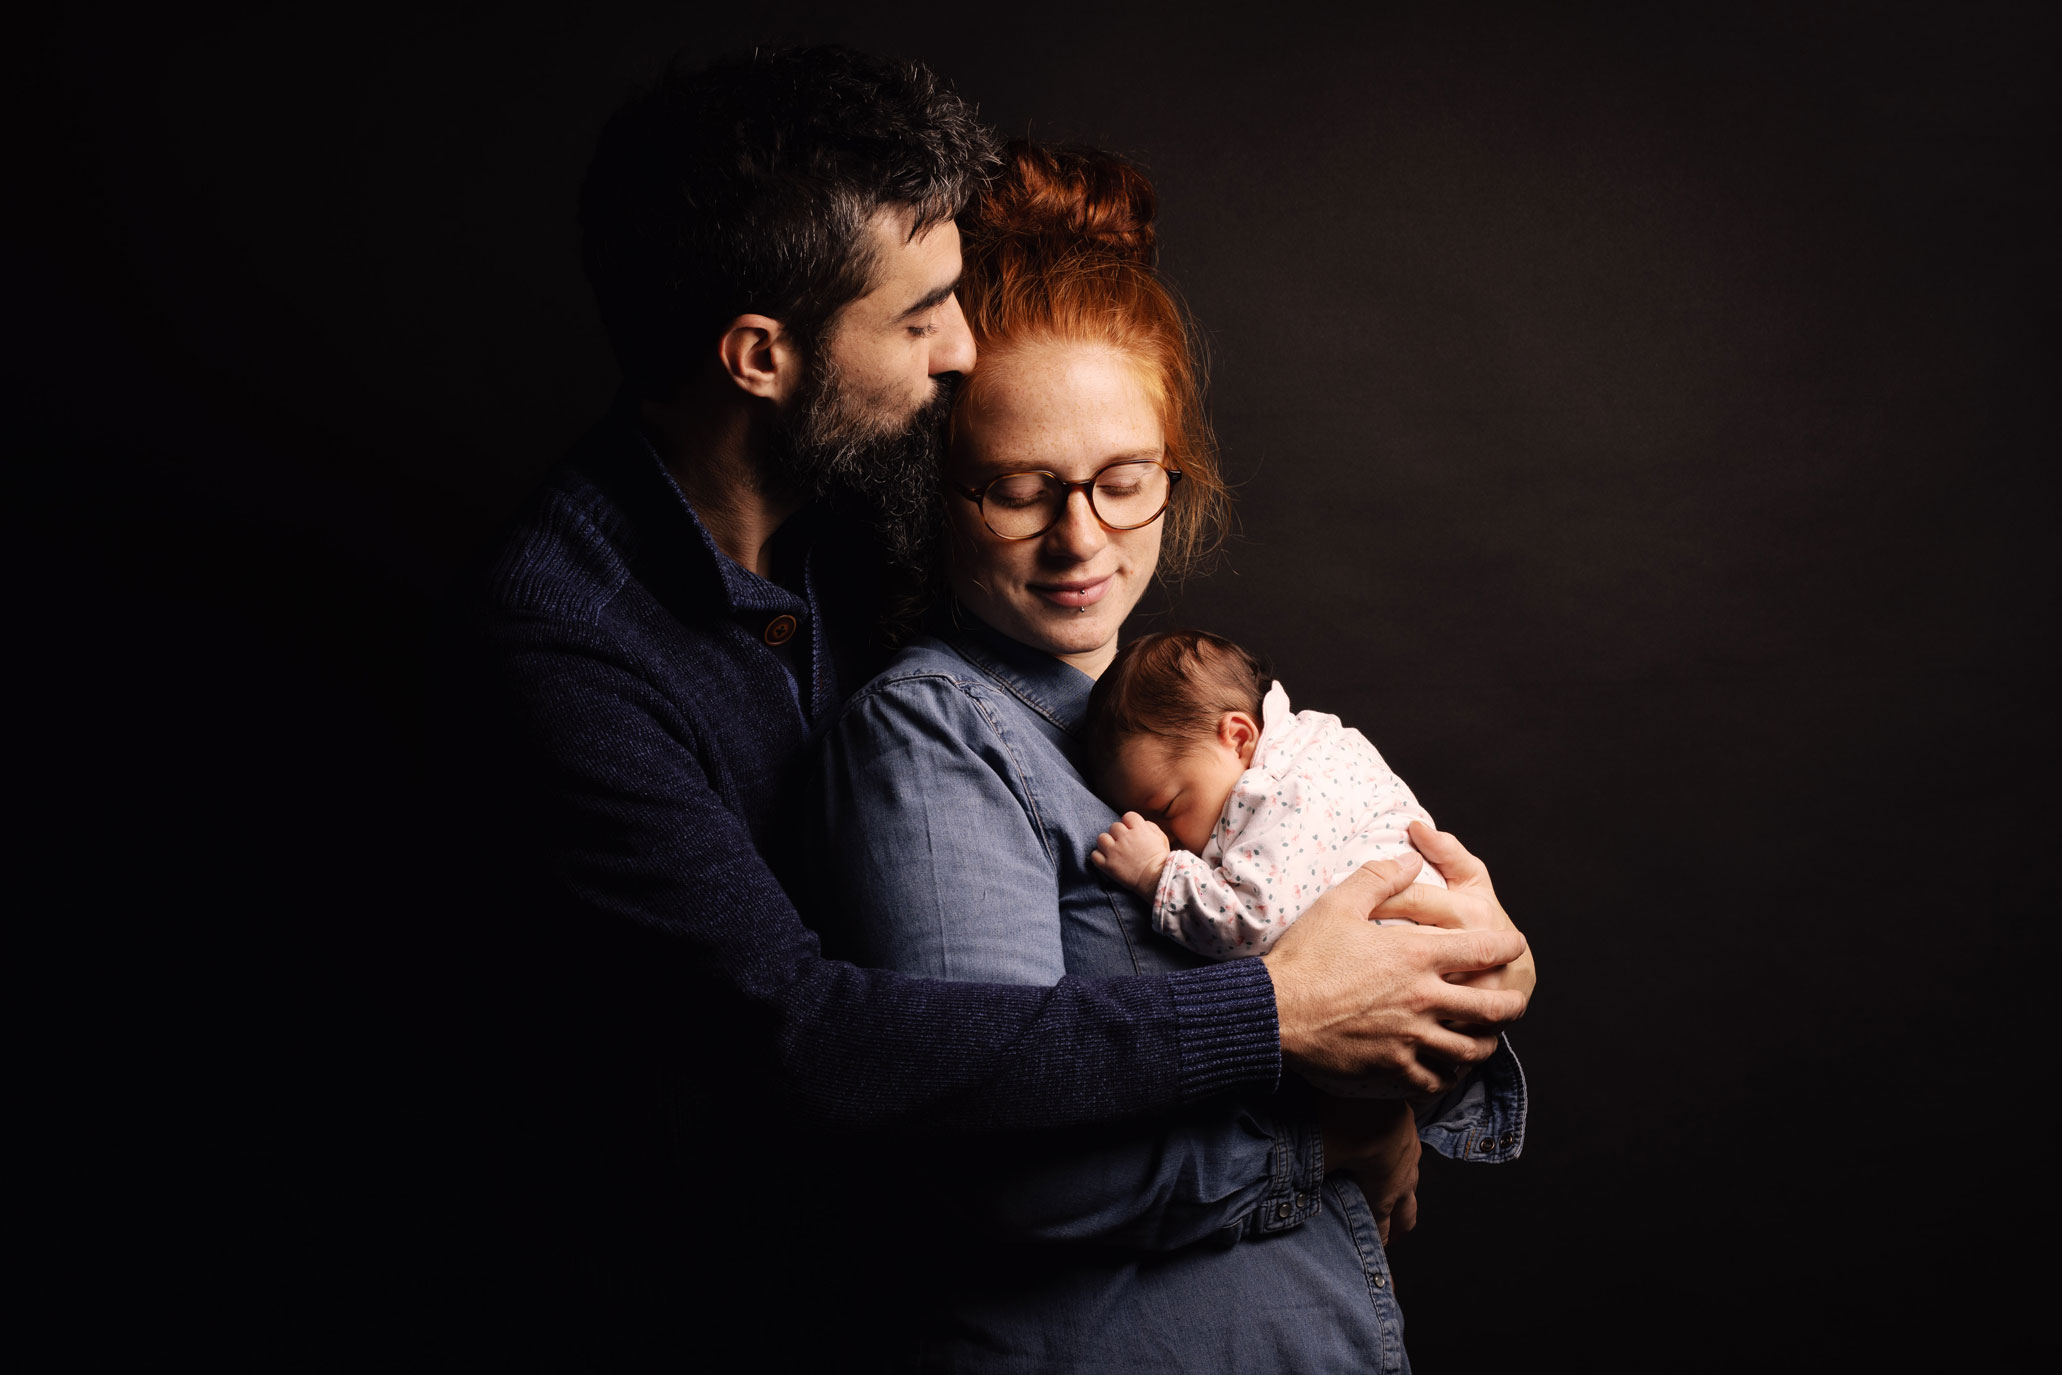 Portrait de famille avec un nouveau né en studio